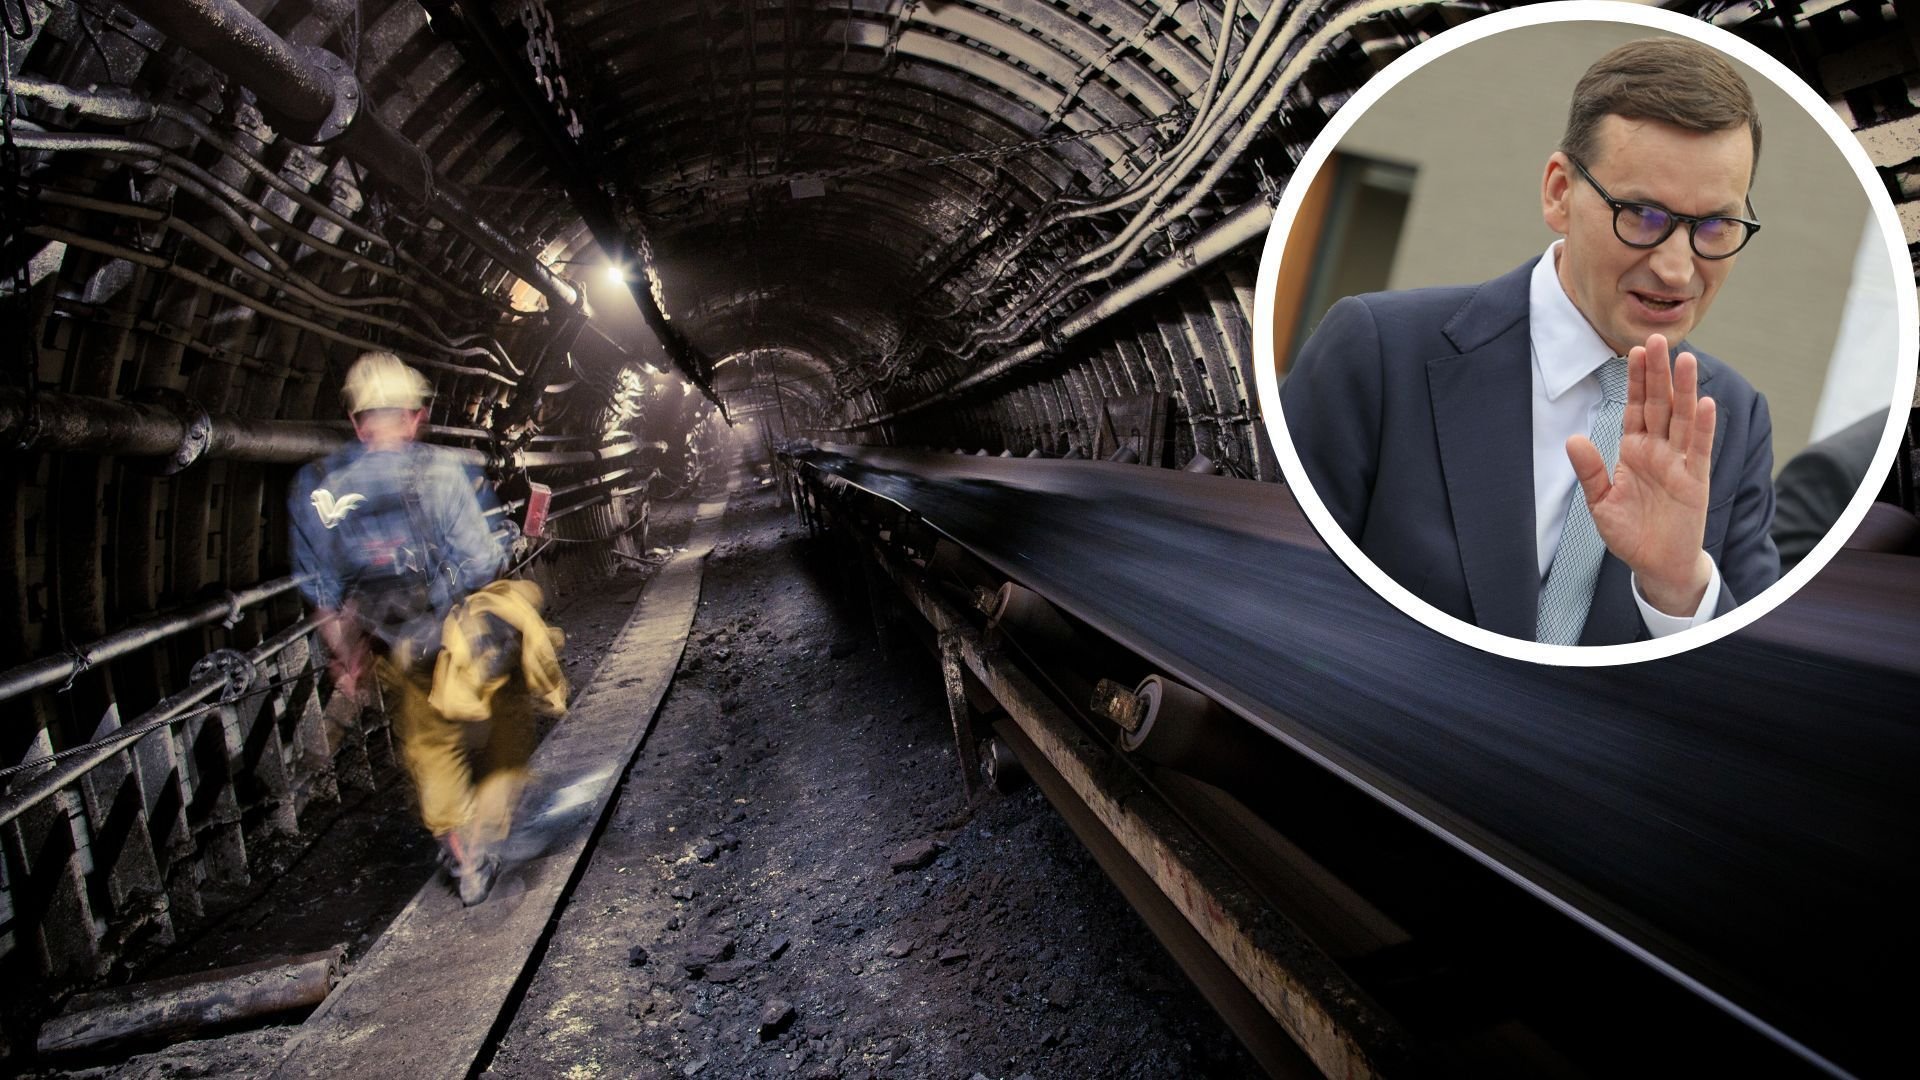 Morawiecki deklaruje, że rząd pomoże przy zakupie węgla, ale górnicy alarmują, że węgla nie wystarczy